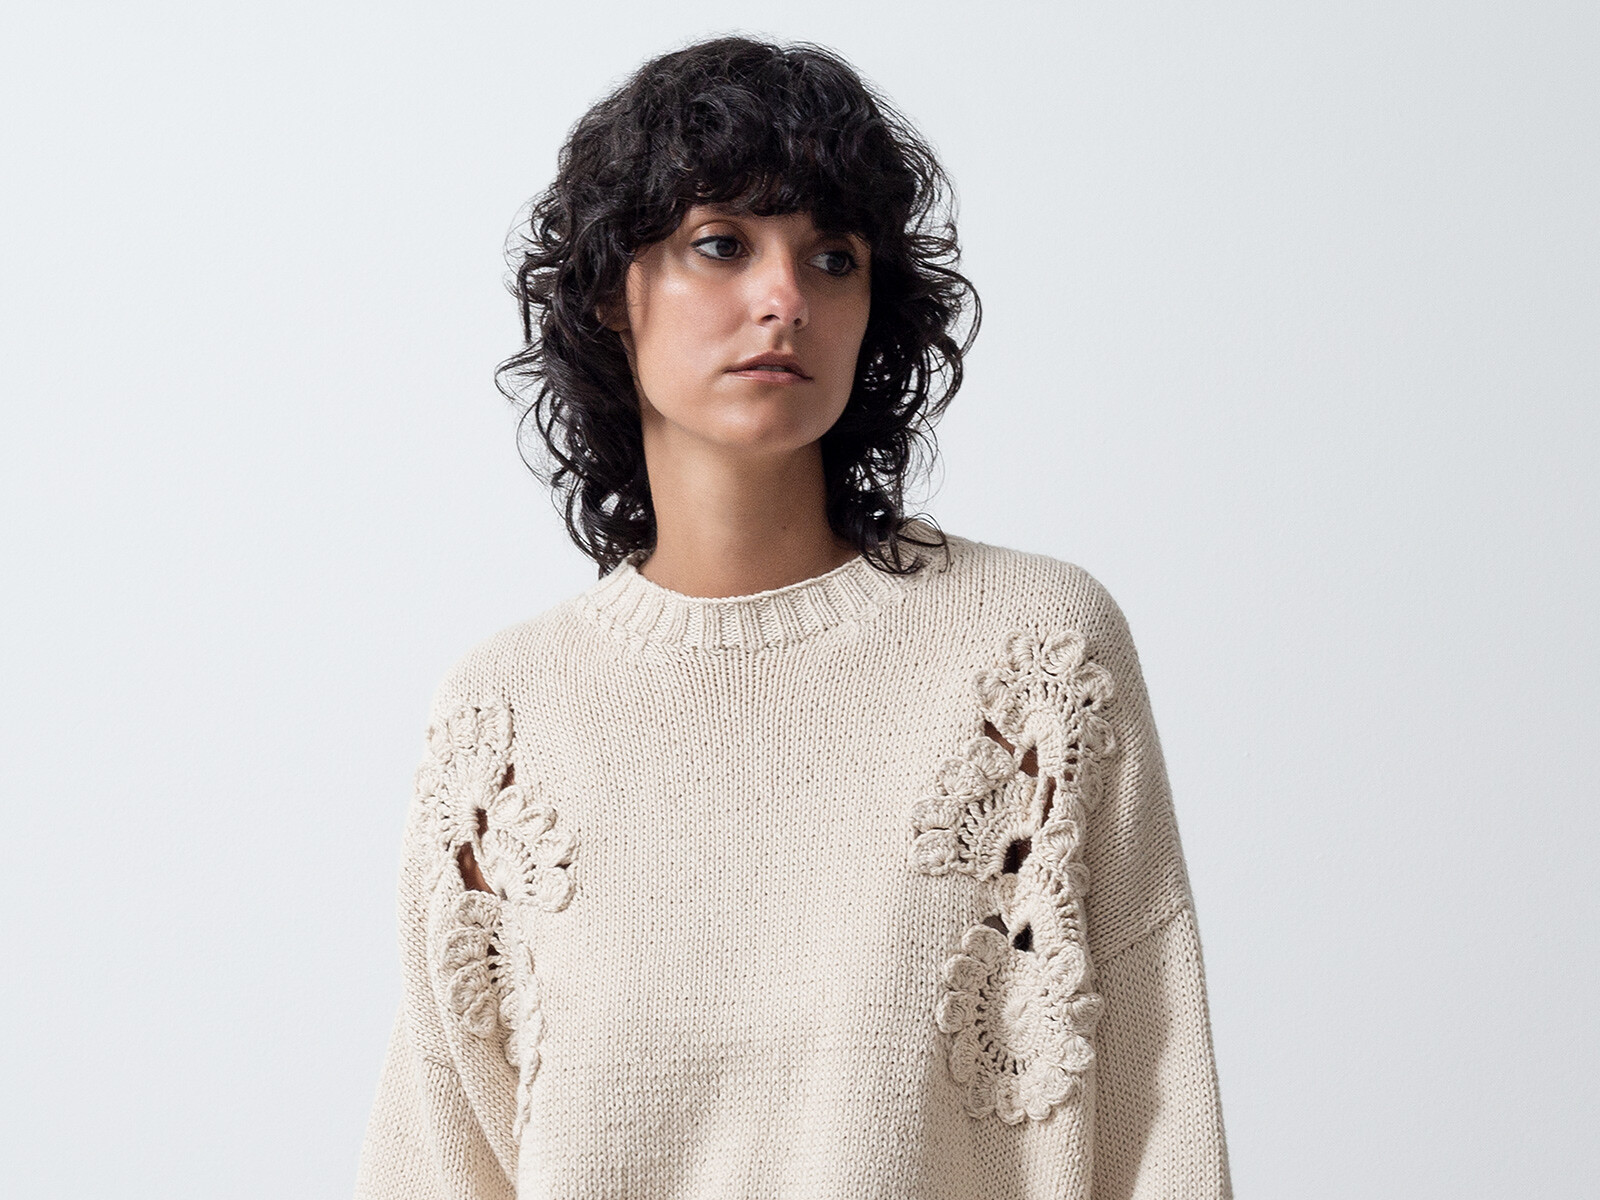 Mending crochet sweater Image